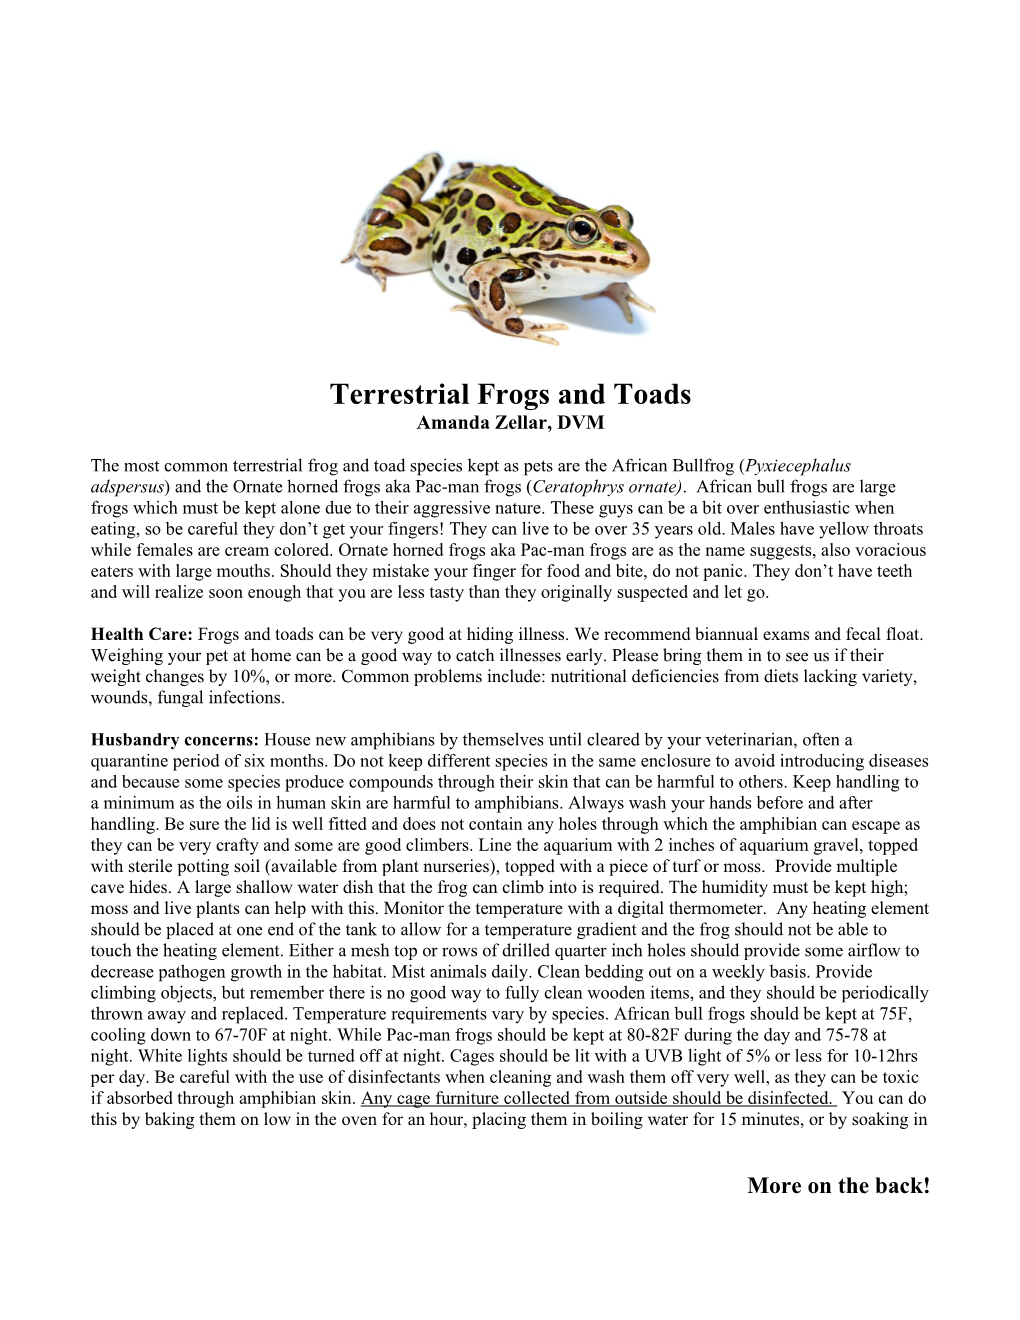 Terrestrial Frogs and Toads Amanda Zellar, DVM